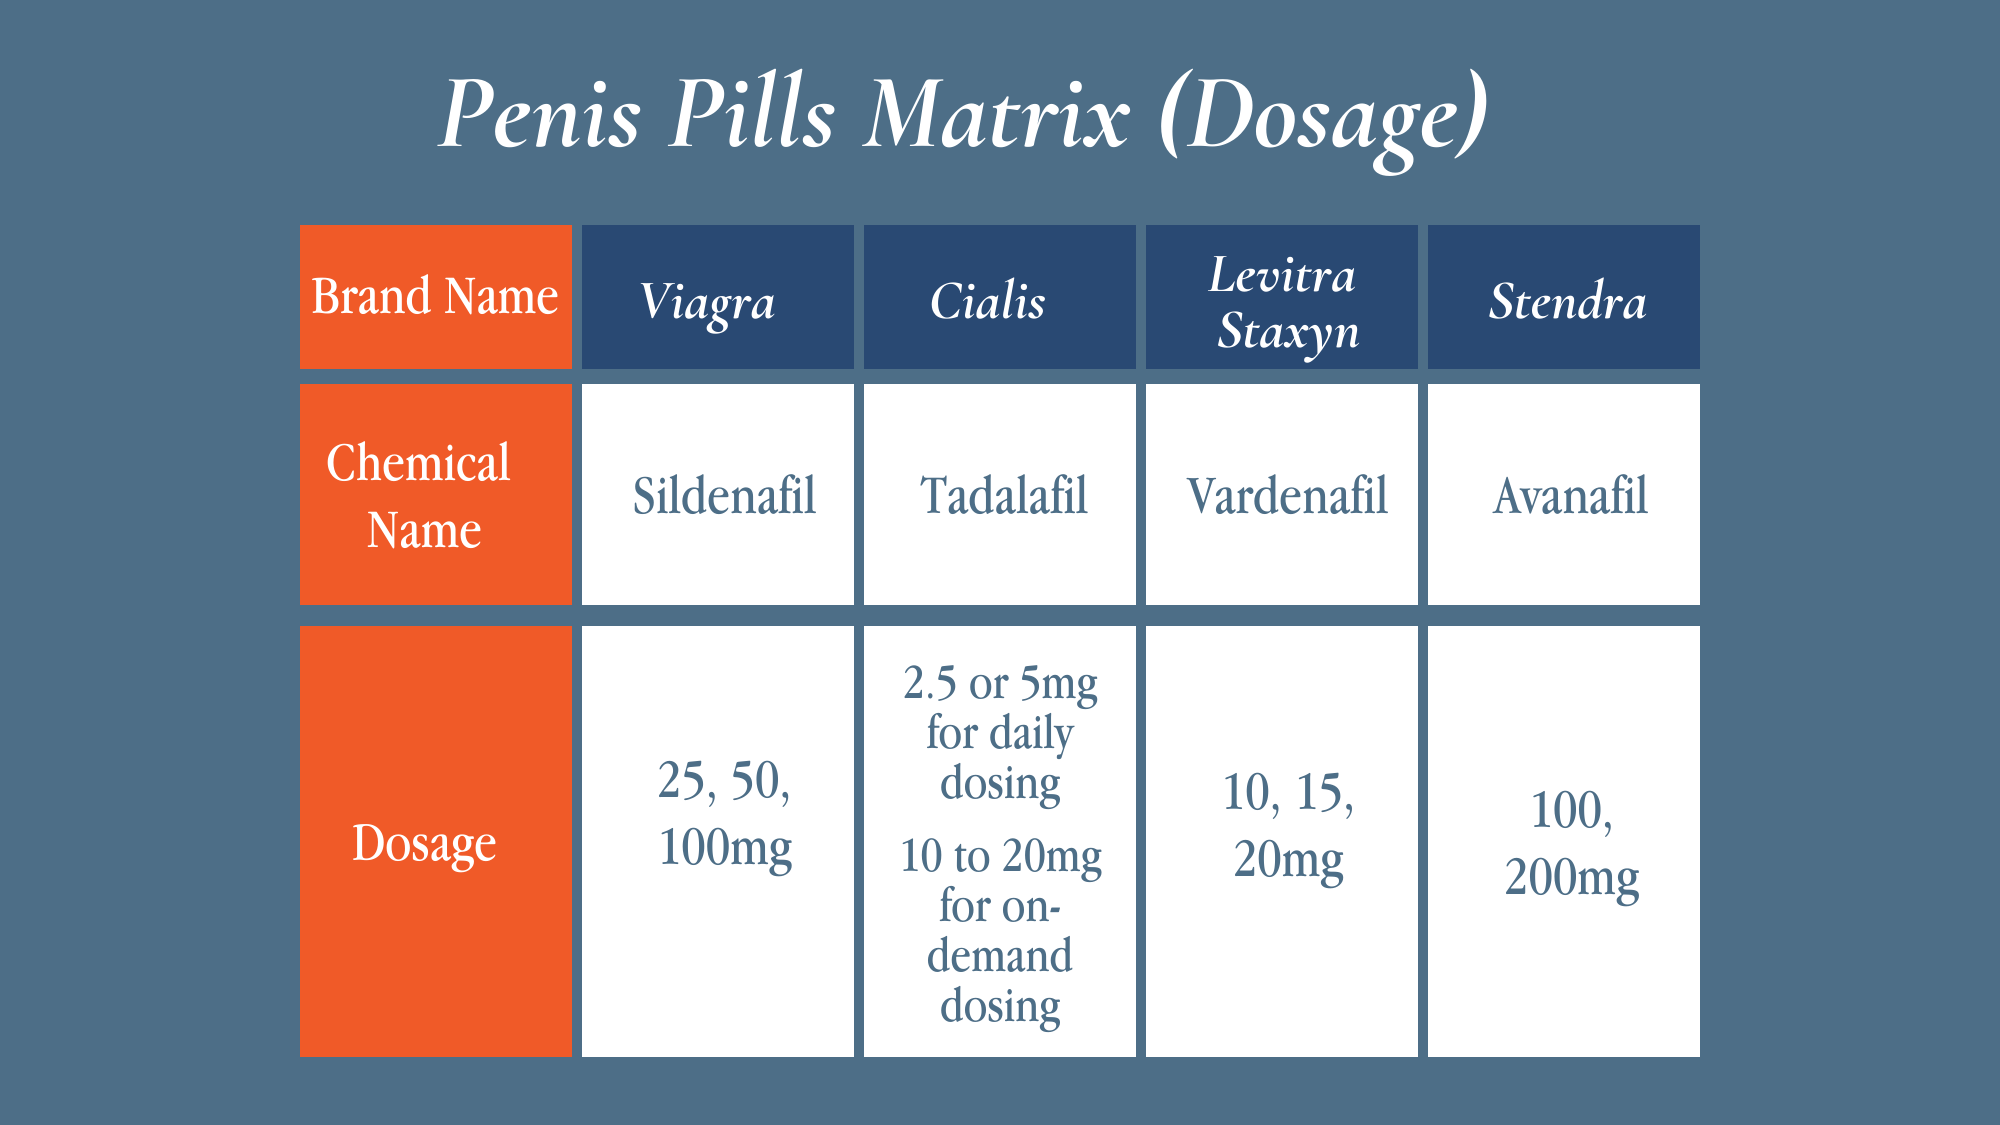 penis-pills-matrix-1-penile-rehabilitation-program